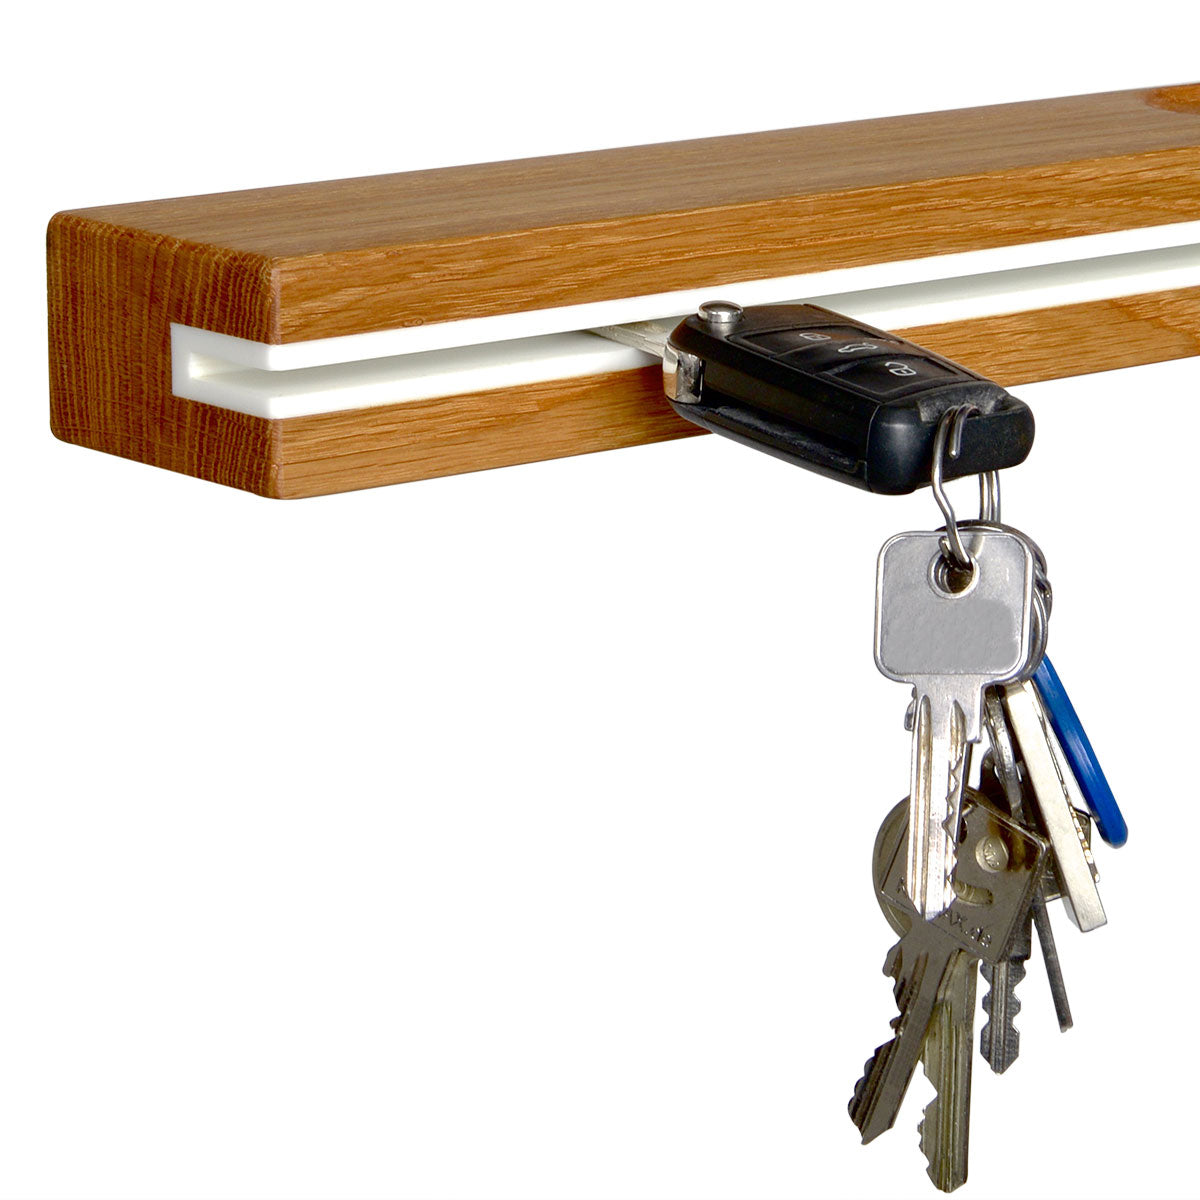 Key rack | Schlüsselbrett aus Eichenholz und Acrylstein - Handgefertigt in Deutschland